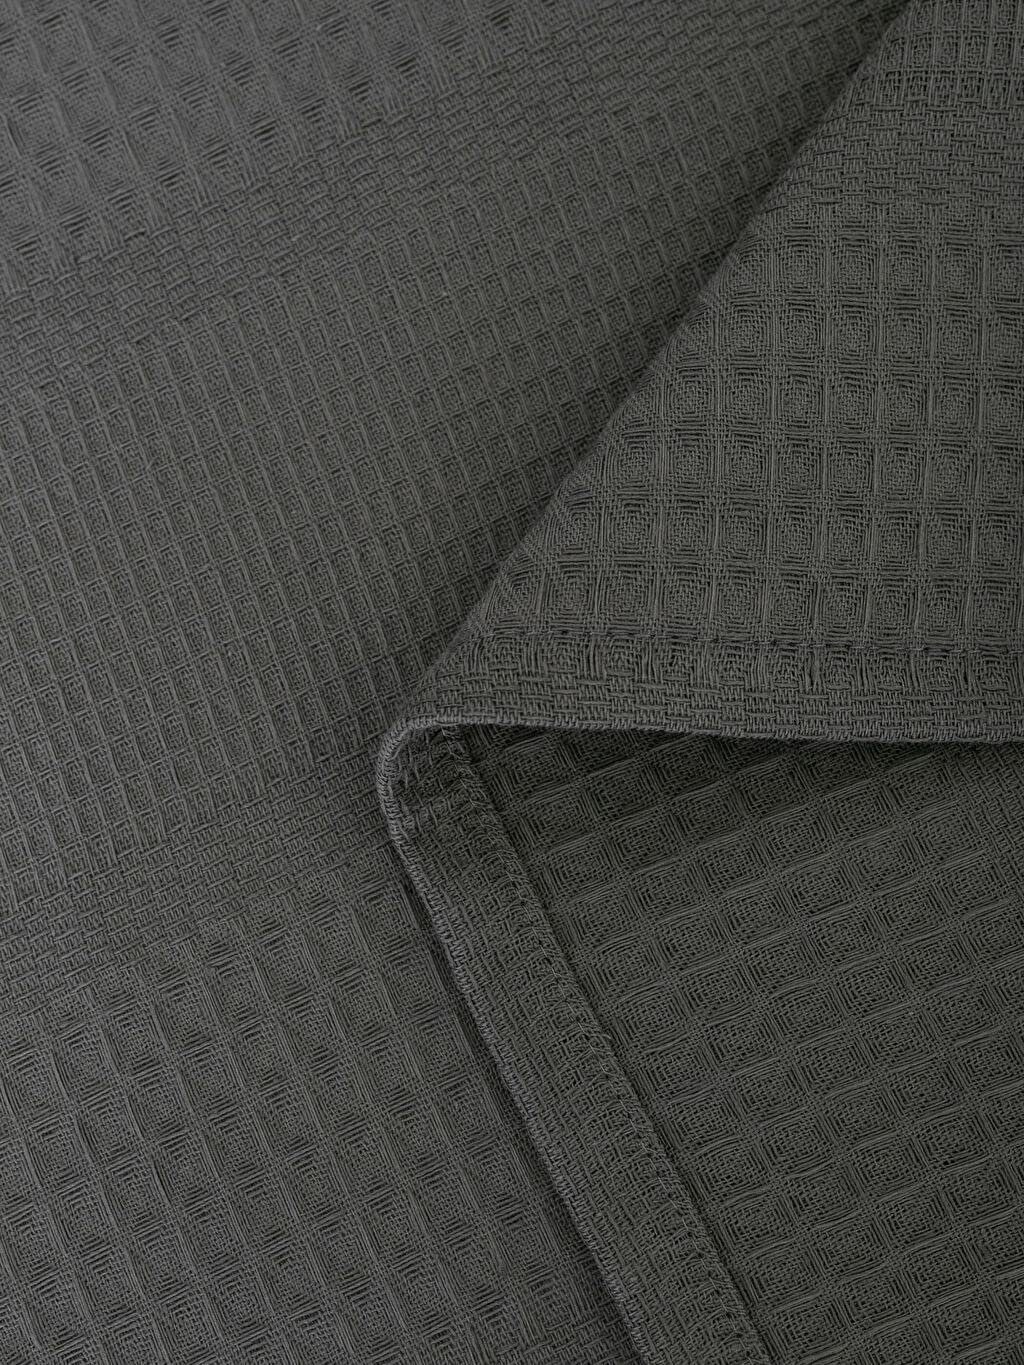 Tagesdecke grau), Tagesdecke (160x220 Furni24 cm, Pique-Decke,